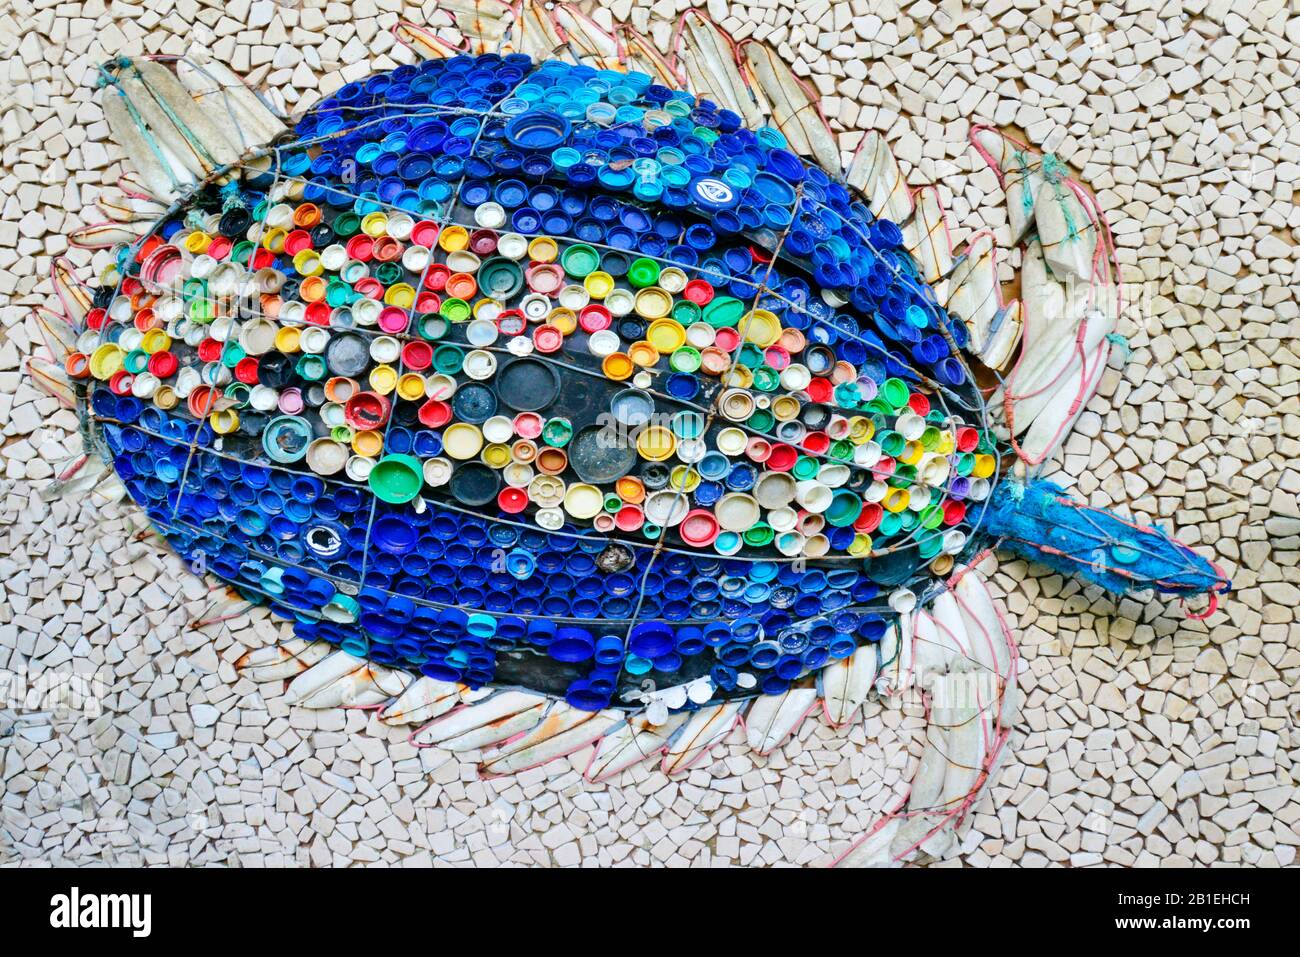 Parque de Humedales iSimangaliso. Escultura de una tortuga hecha con gorras de plástico y otros escombros encontrados en las playas del parque nacional donde el mar turt Foto de stock